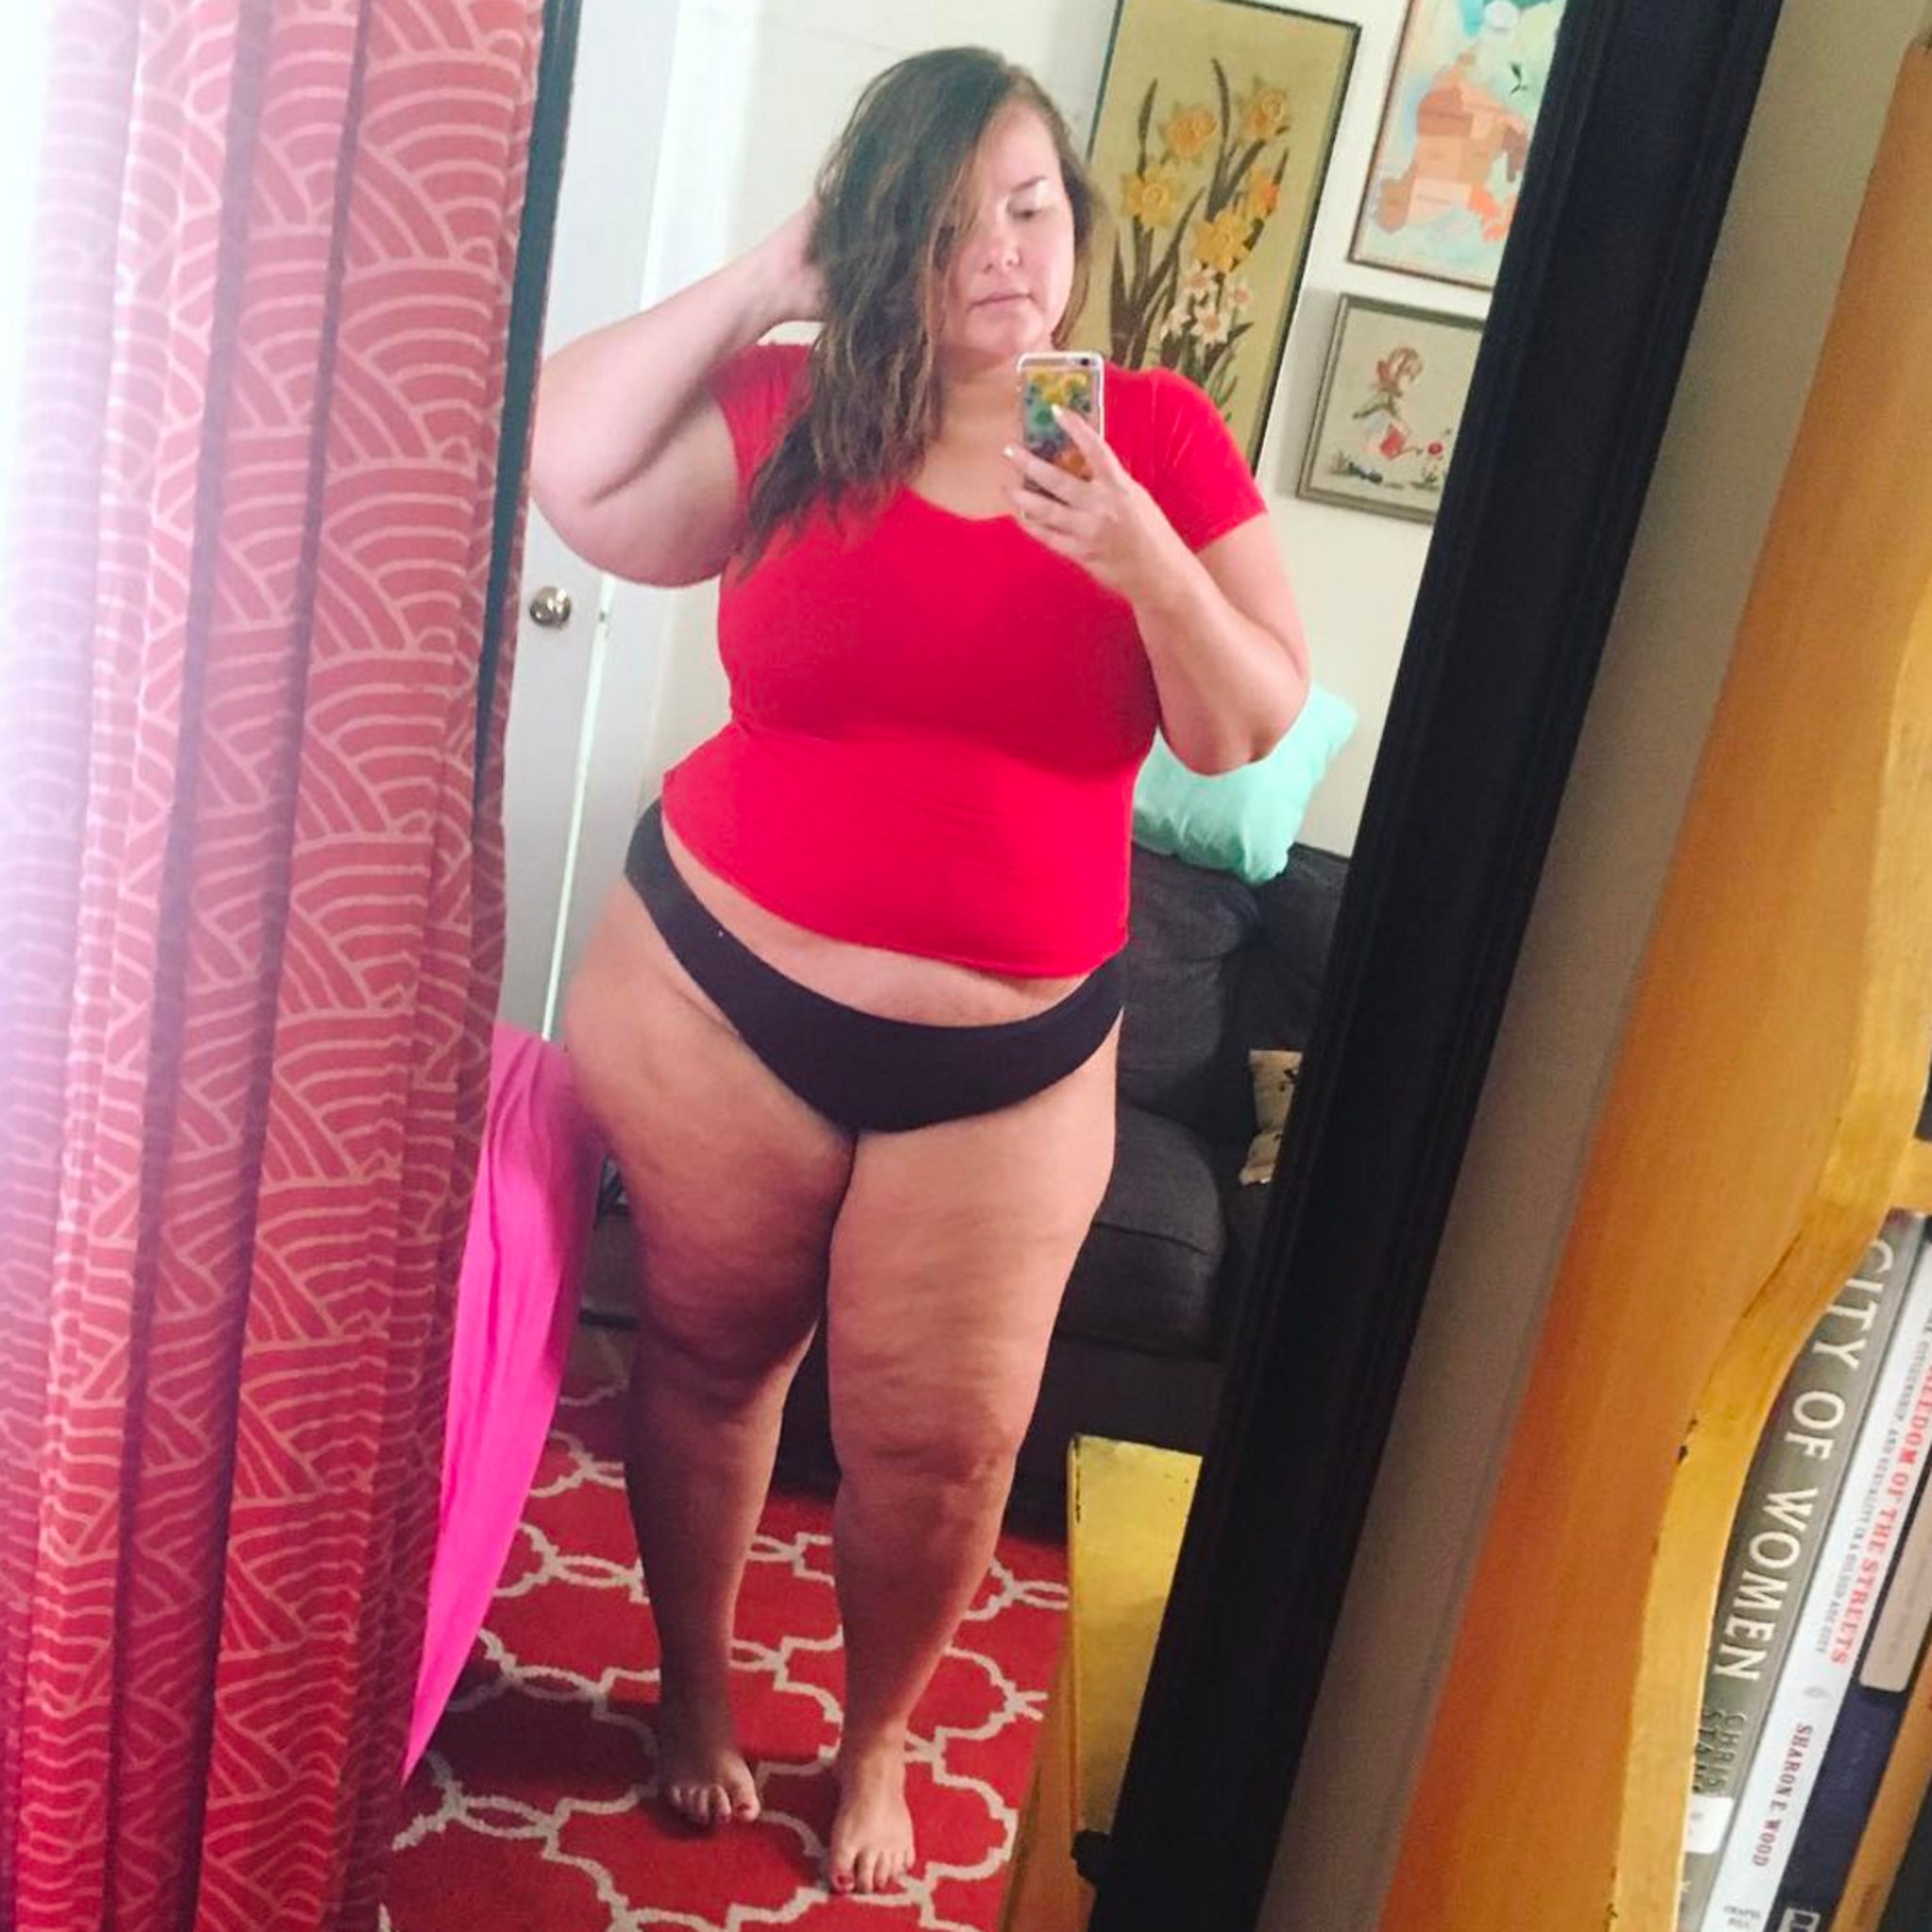 fat girl mirror selfie